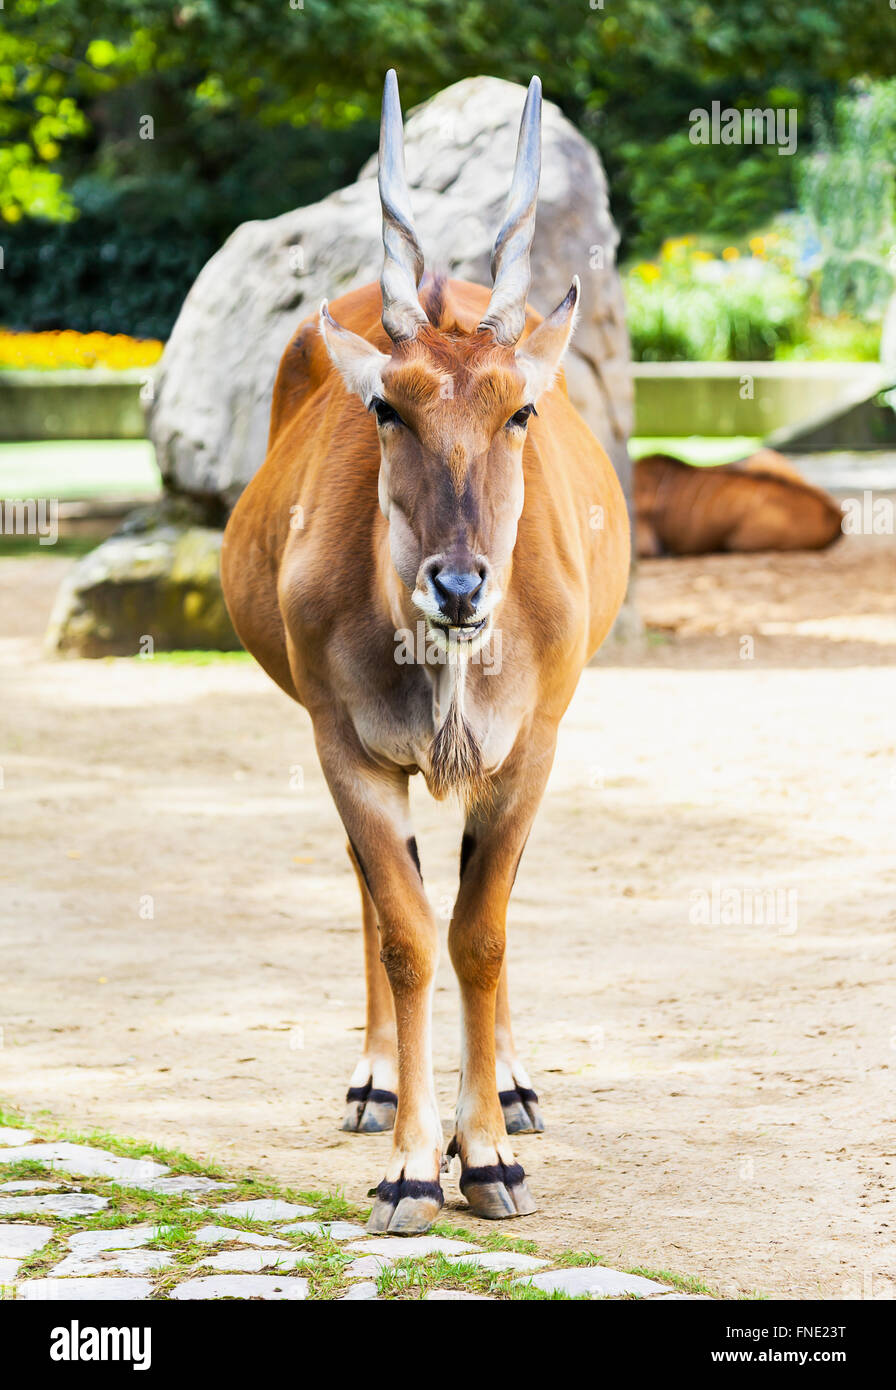 Eland-Antilopen stehen in einen Tierpark Stockfoto